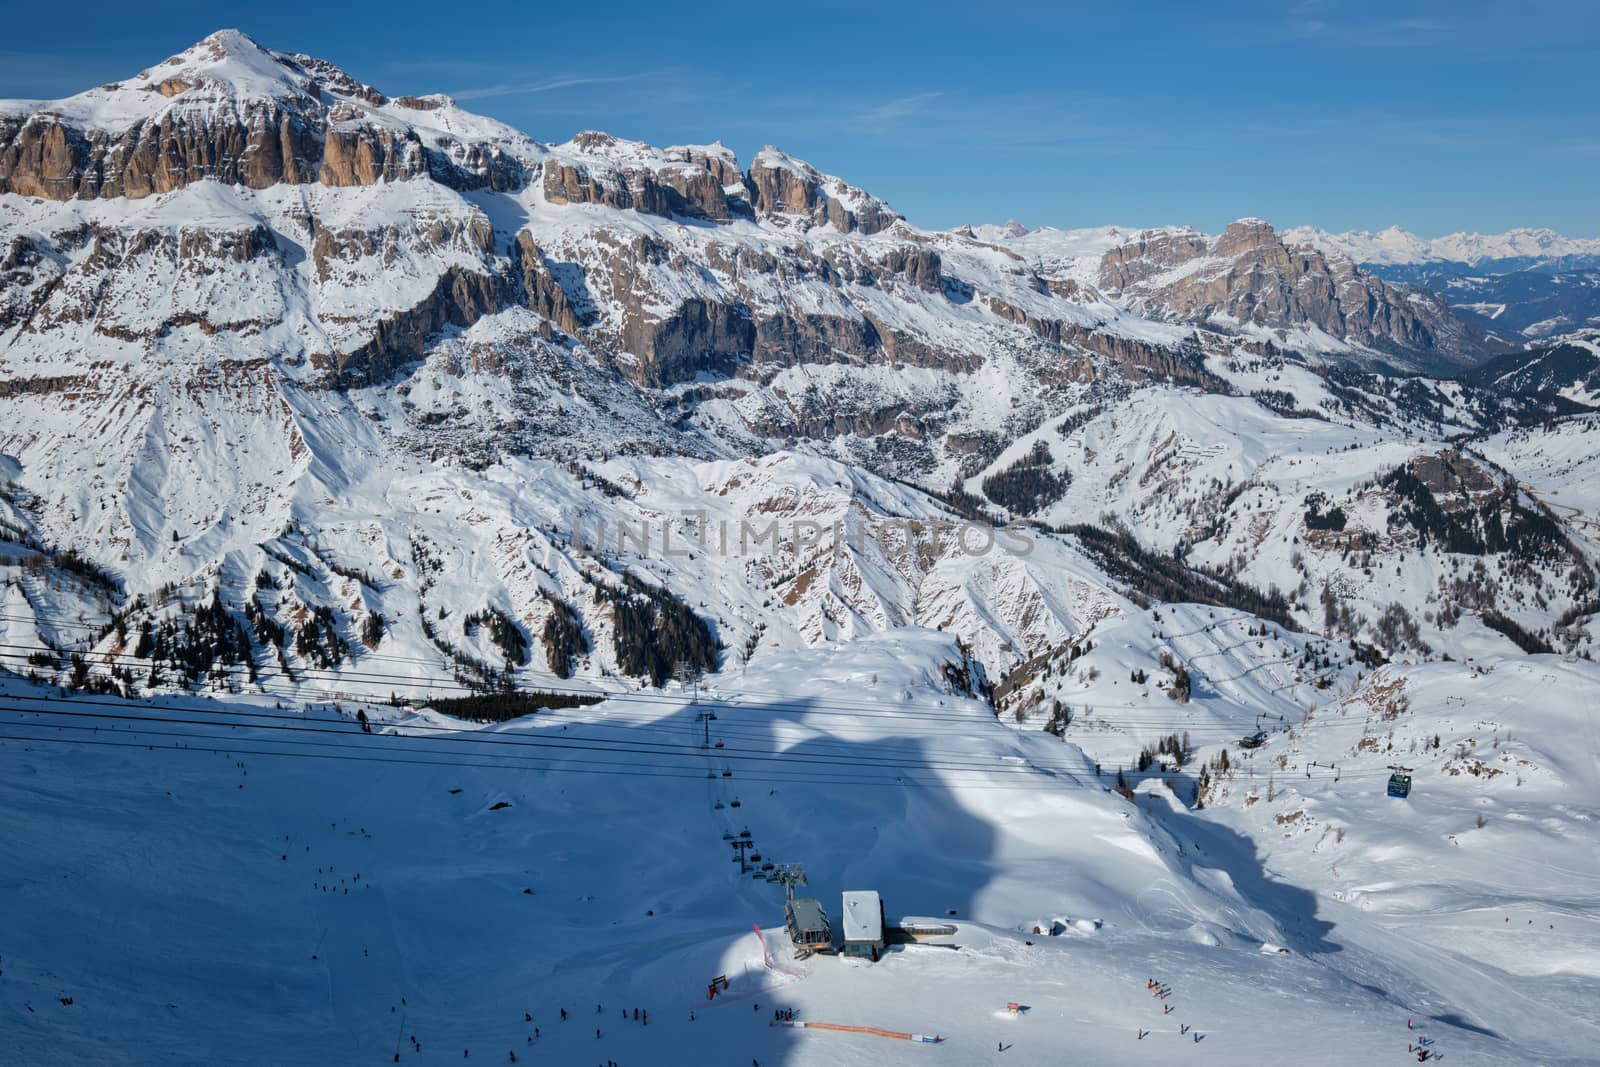 Ski resort in Dolomites, Italy by dimol